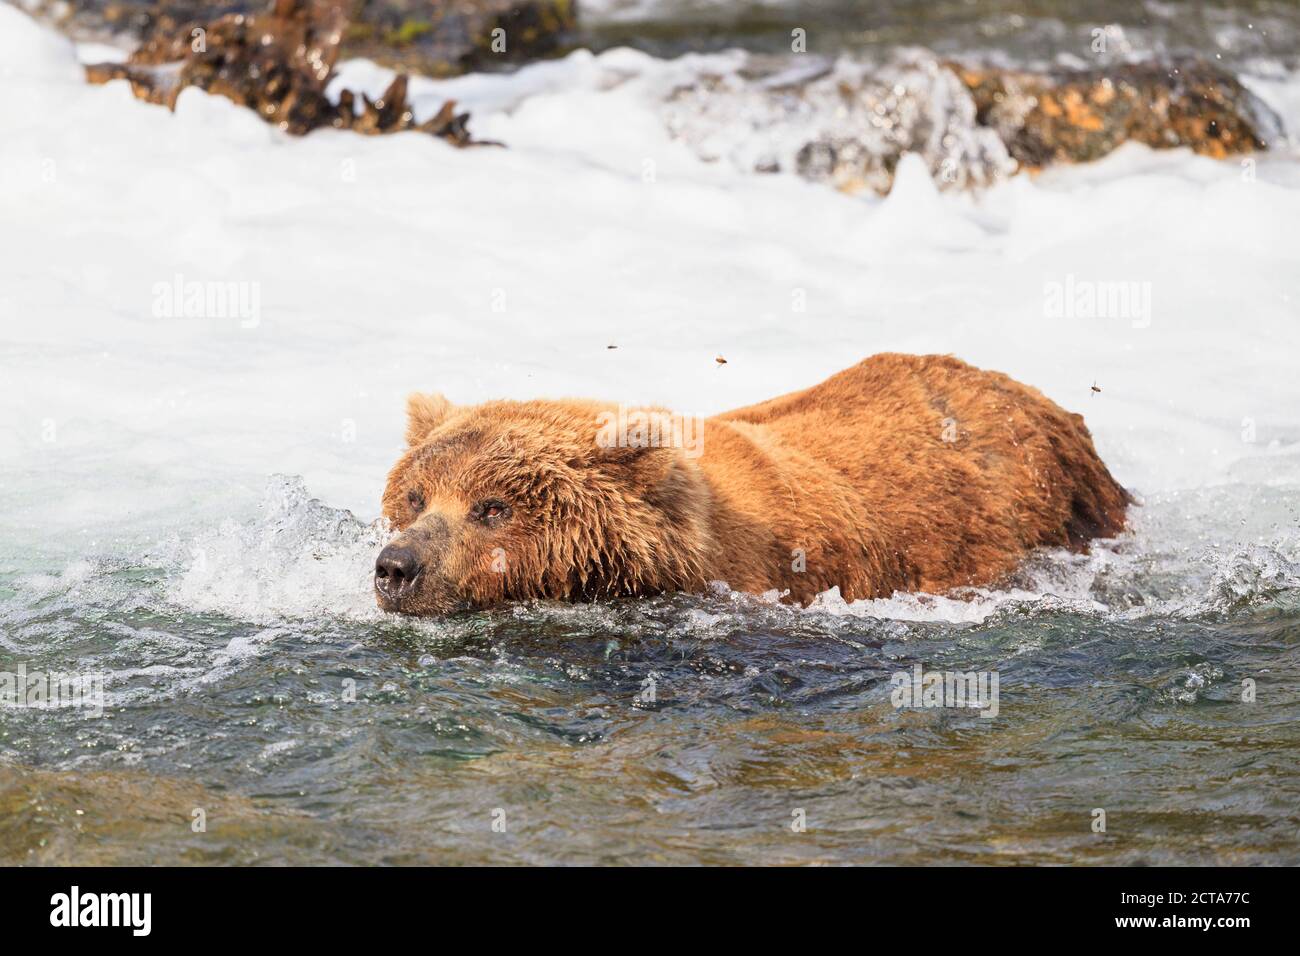 USA, Alaska, Katmai National Park, Brown bear (Ursus arctos) at Brooks Falls, foraging Stock Photo